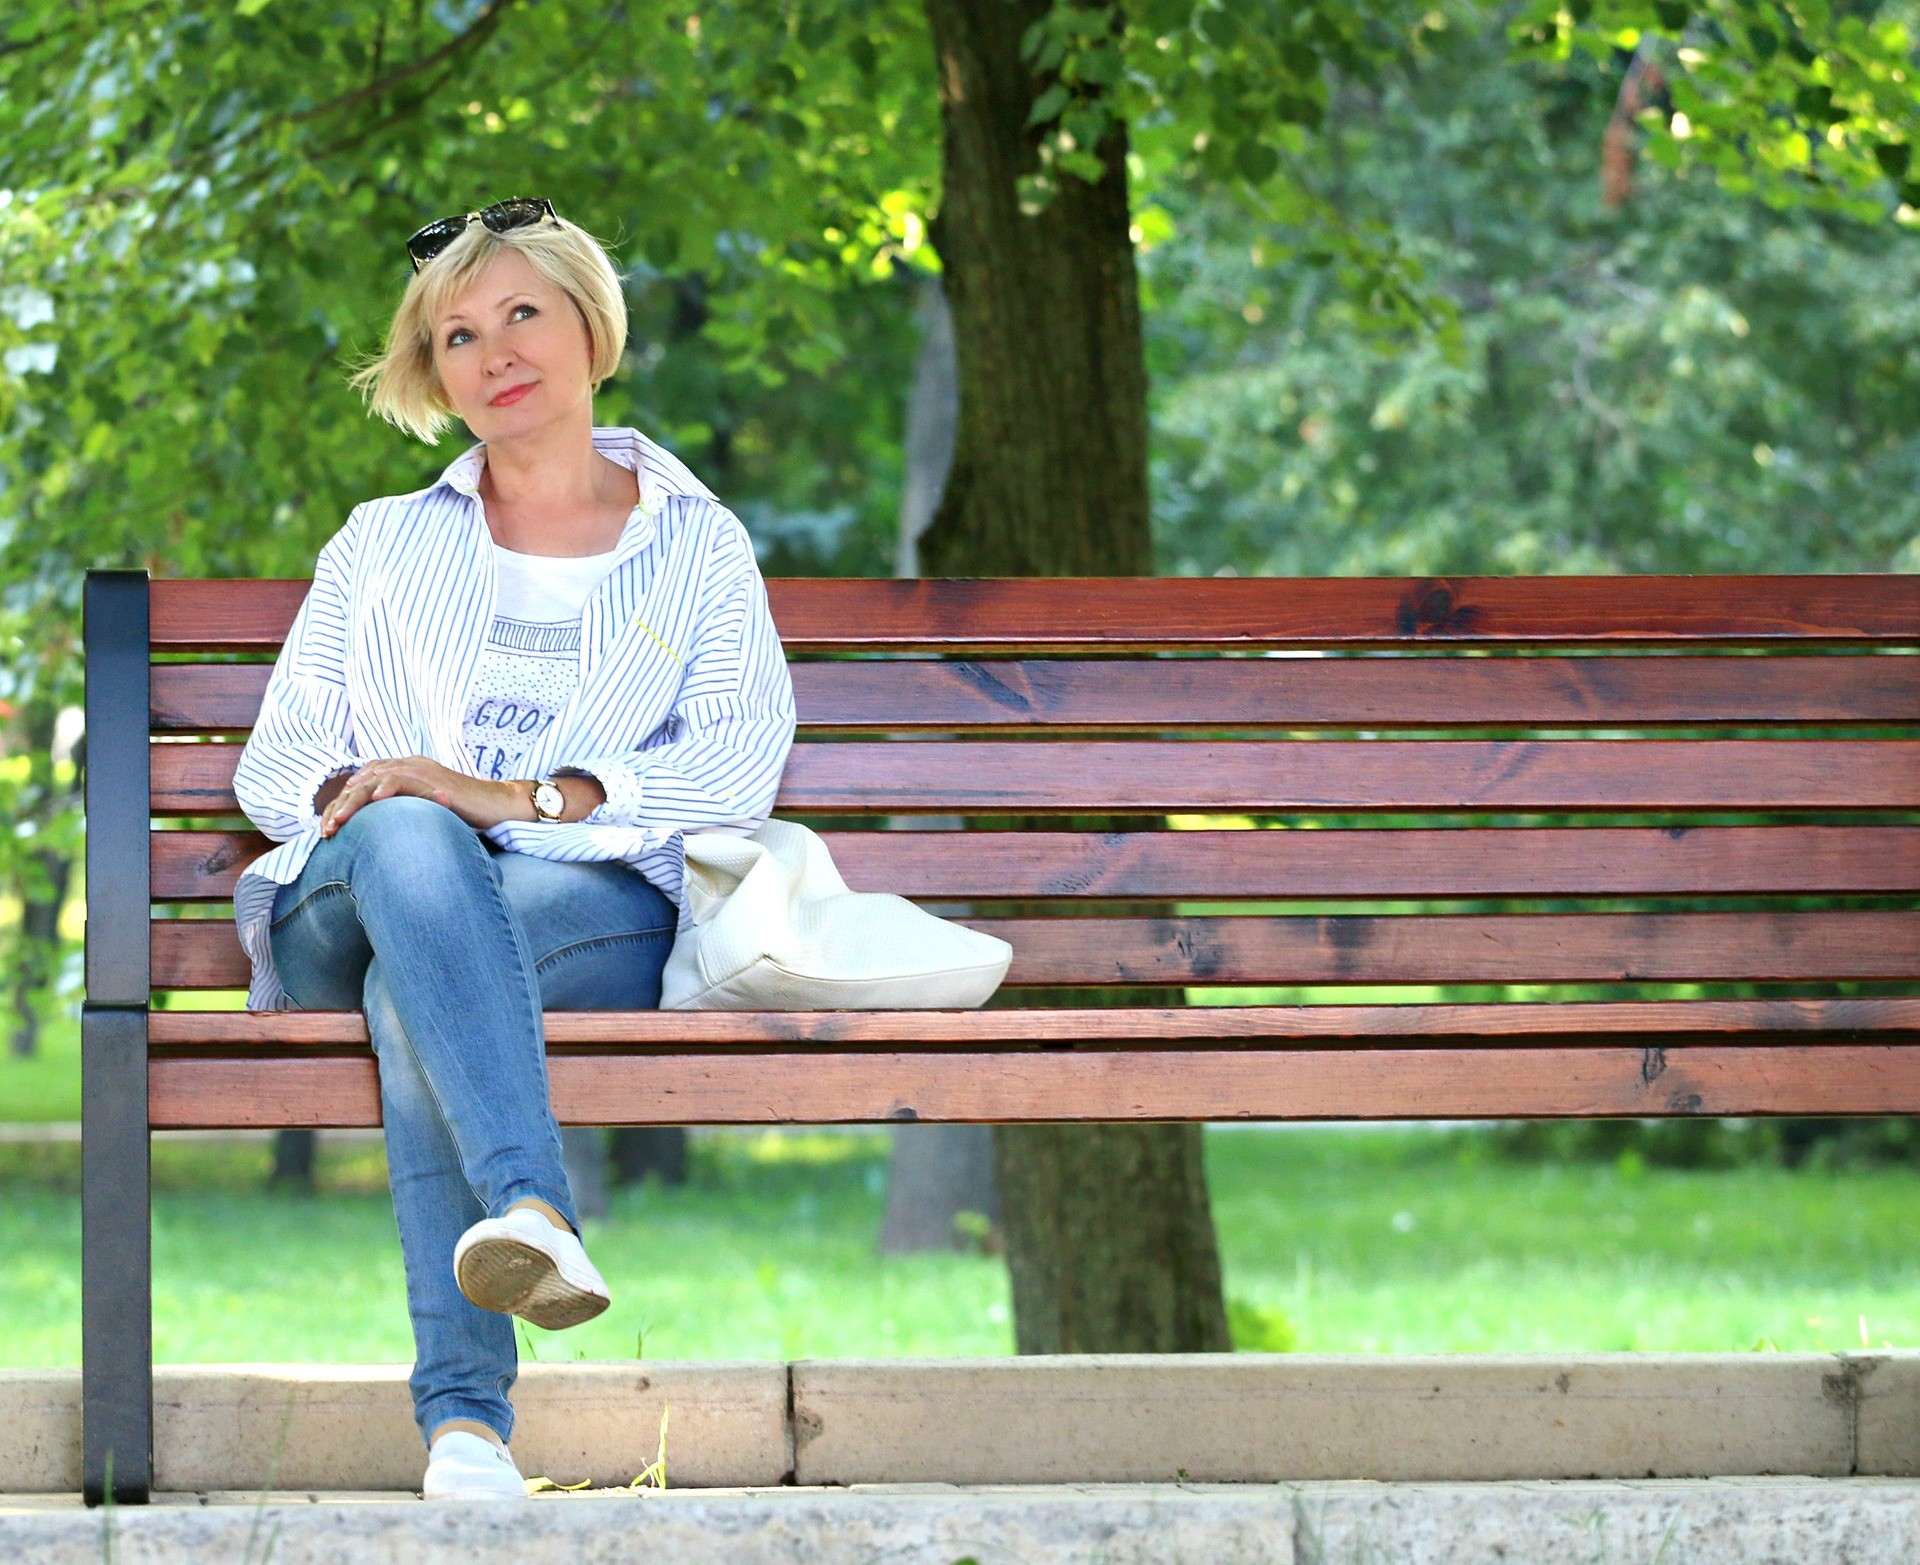 mulheres que vivem em lugares com mais vegetação, entram na menopausa mais tarde (Foto: Creative Commons)